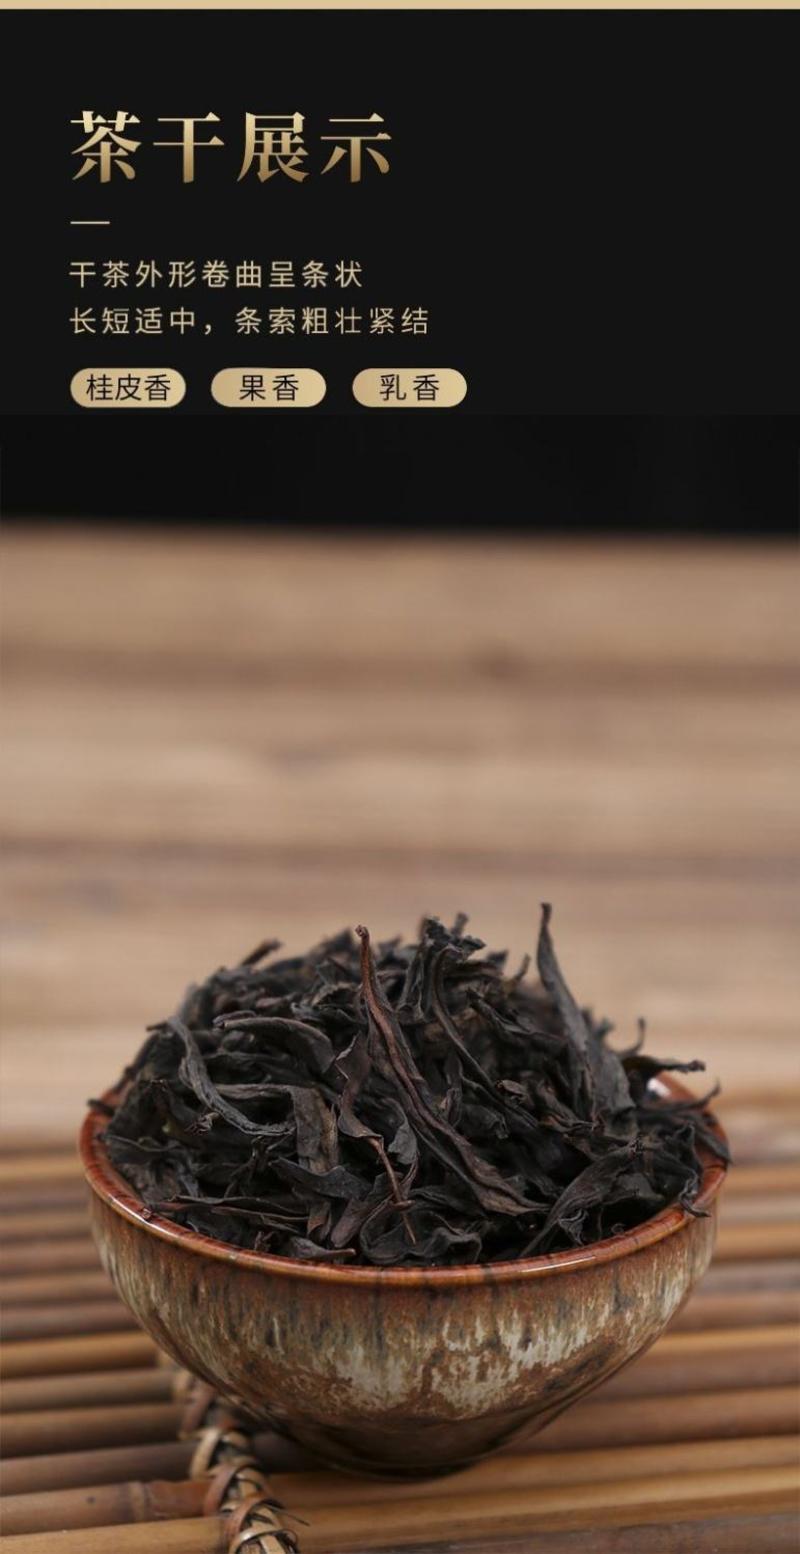 燕子窠肉桂武夷岩茶批发价100元一斤大红袍半发酵乌龙茶